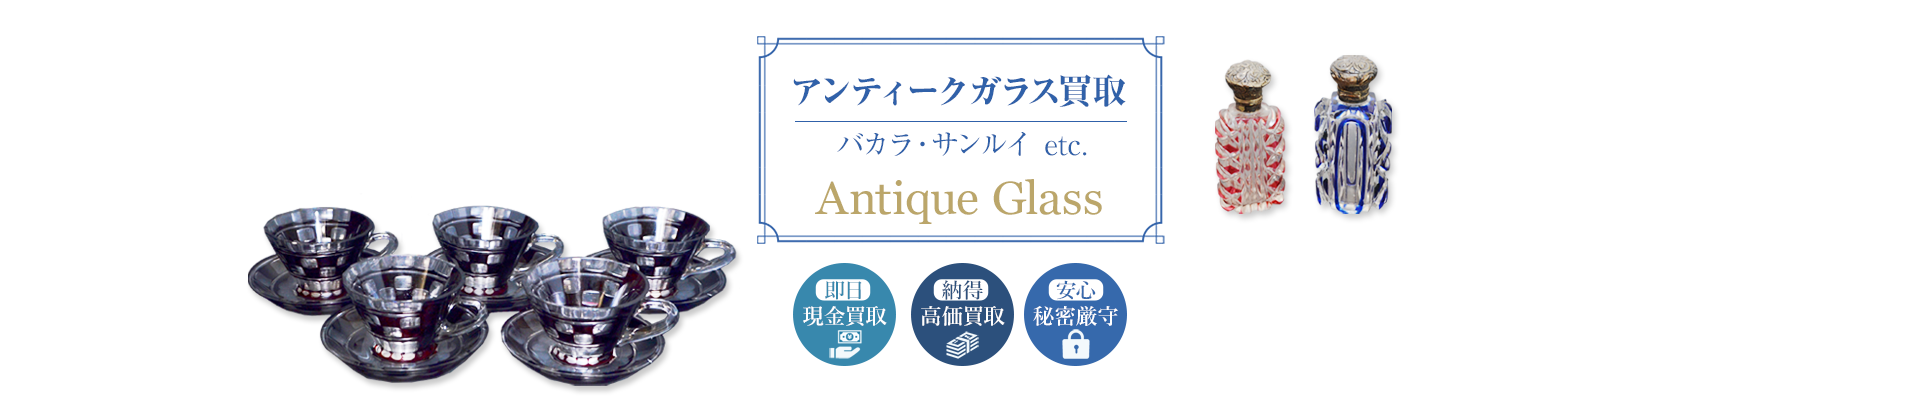 アンティークガラス